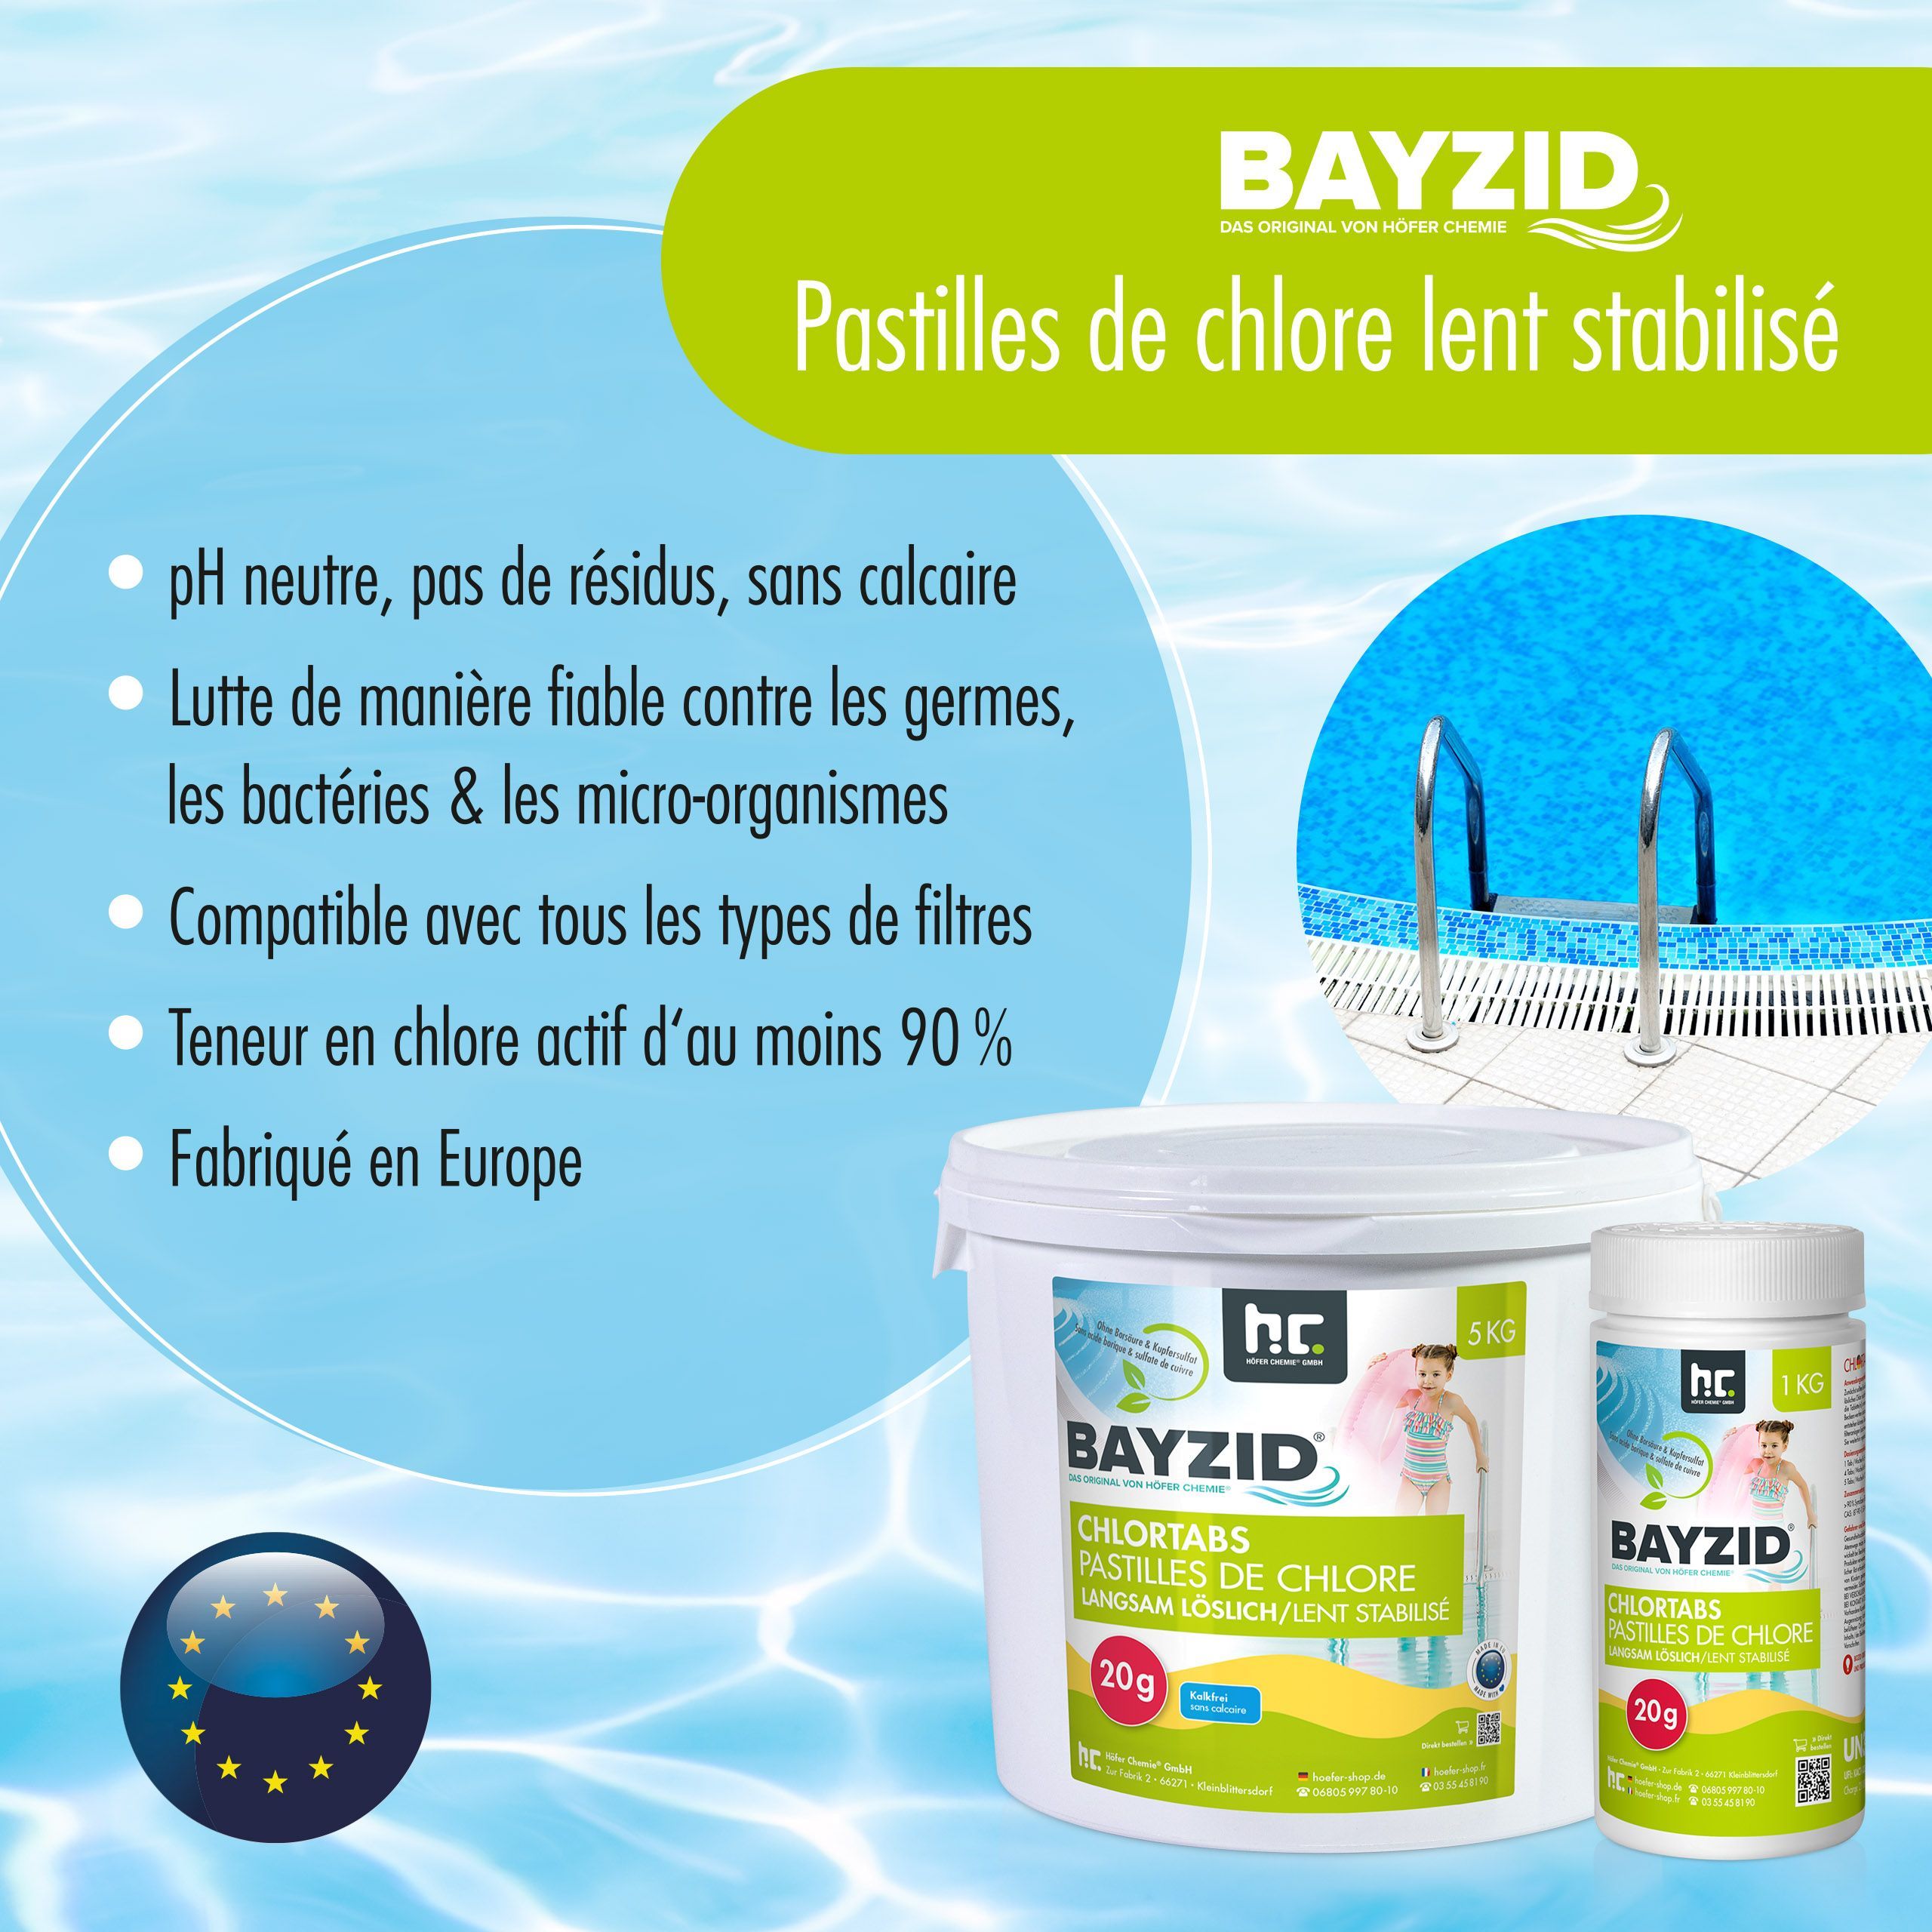 5 kg BAYZID® Chlortabs 20g langsam löslich